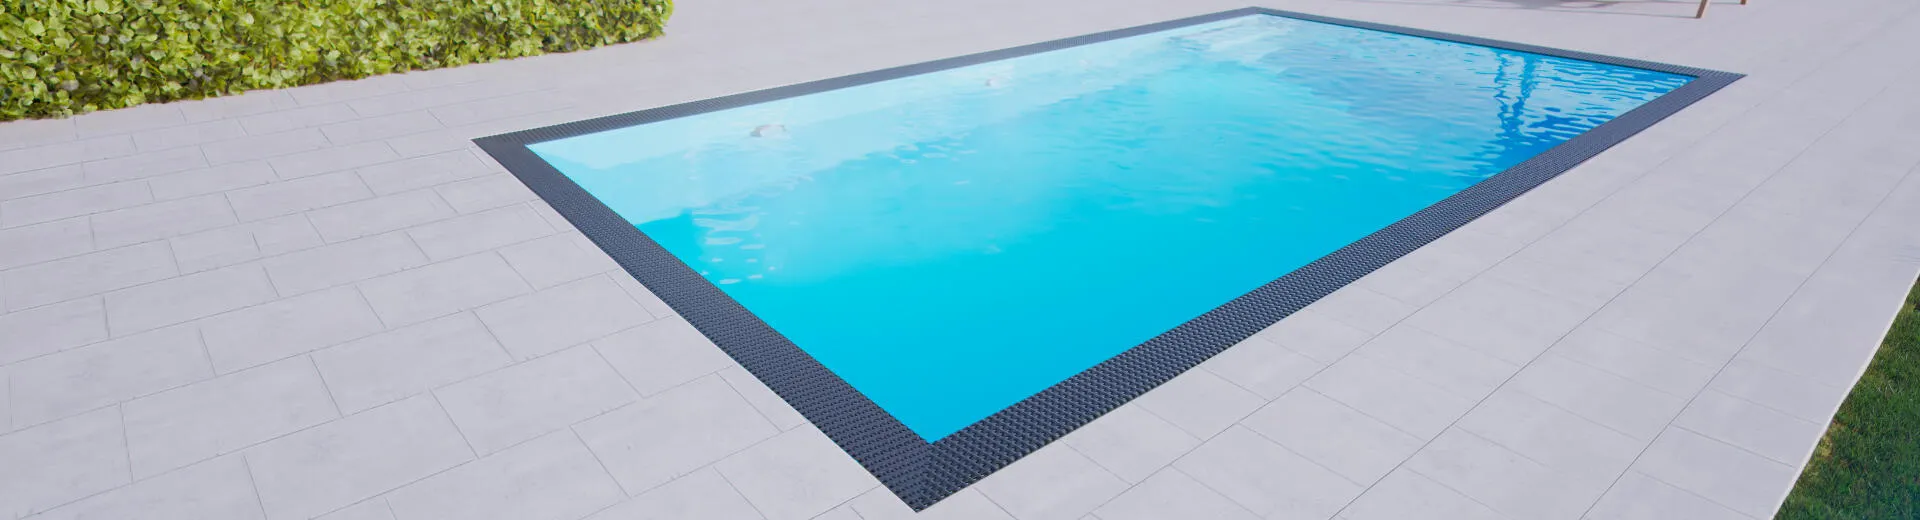 Přelivový bazén 3x8m